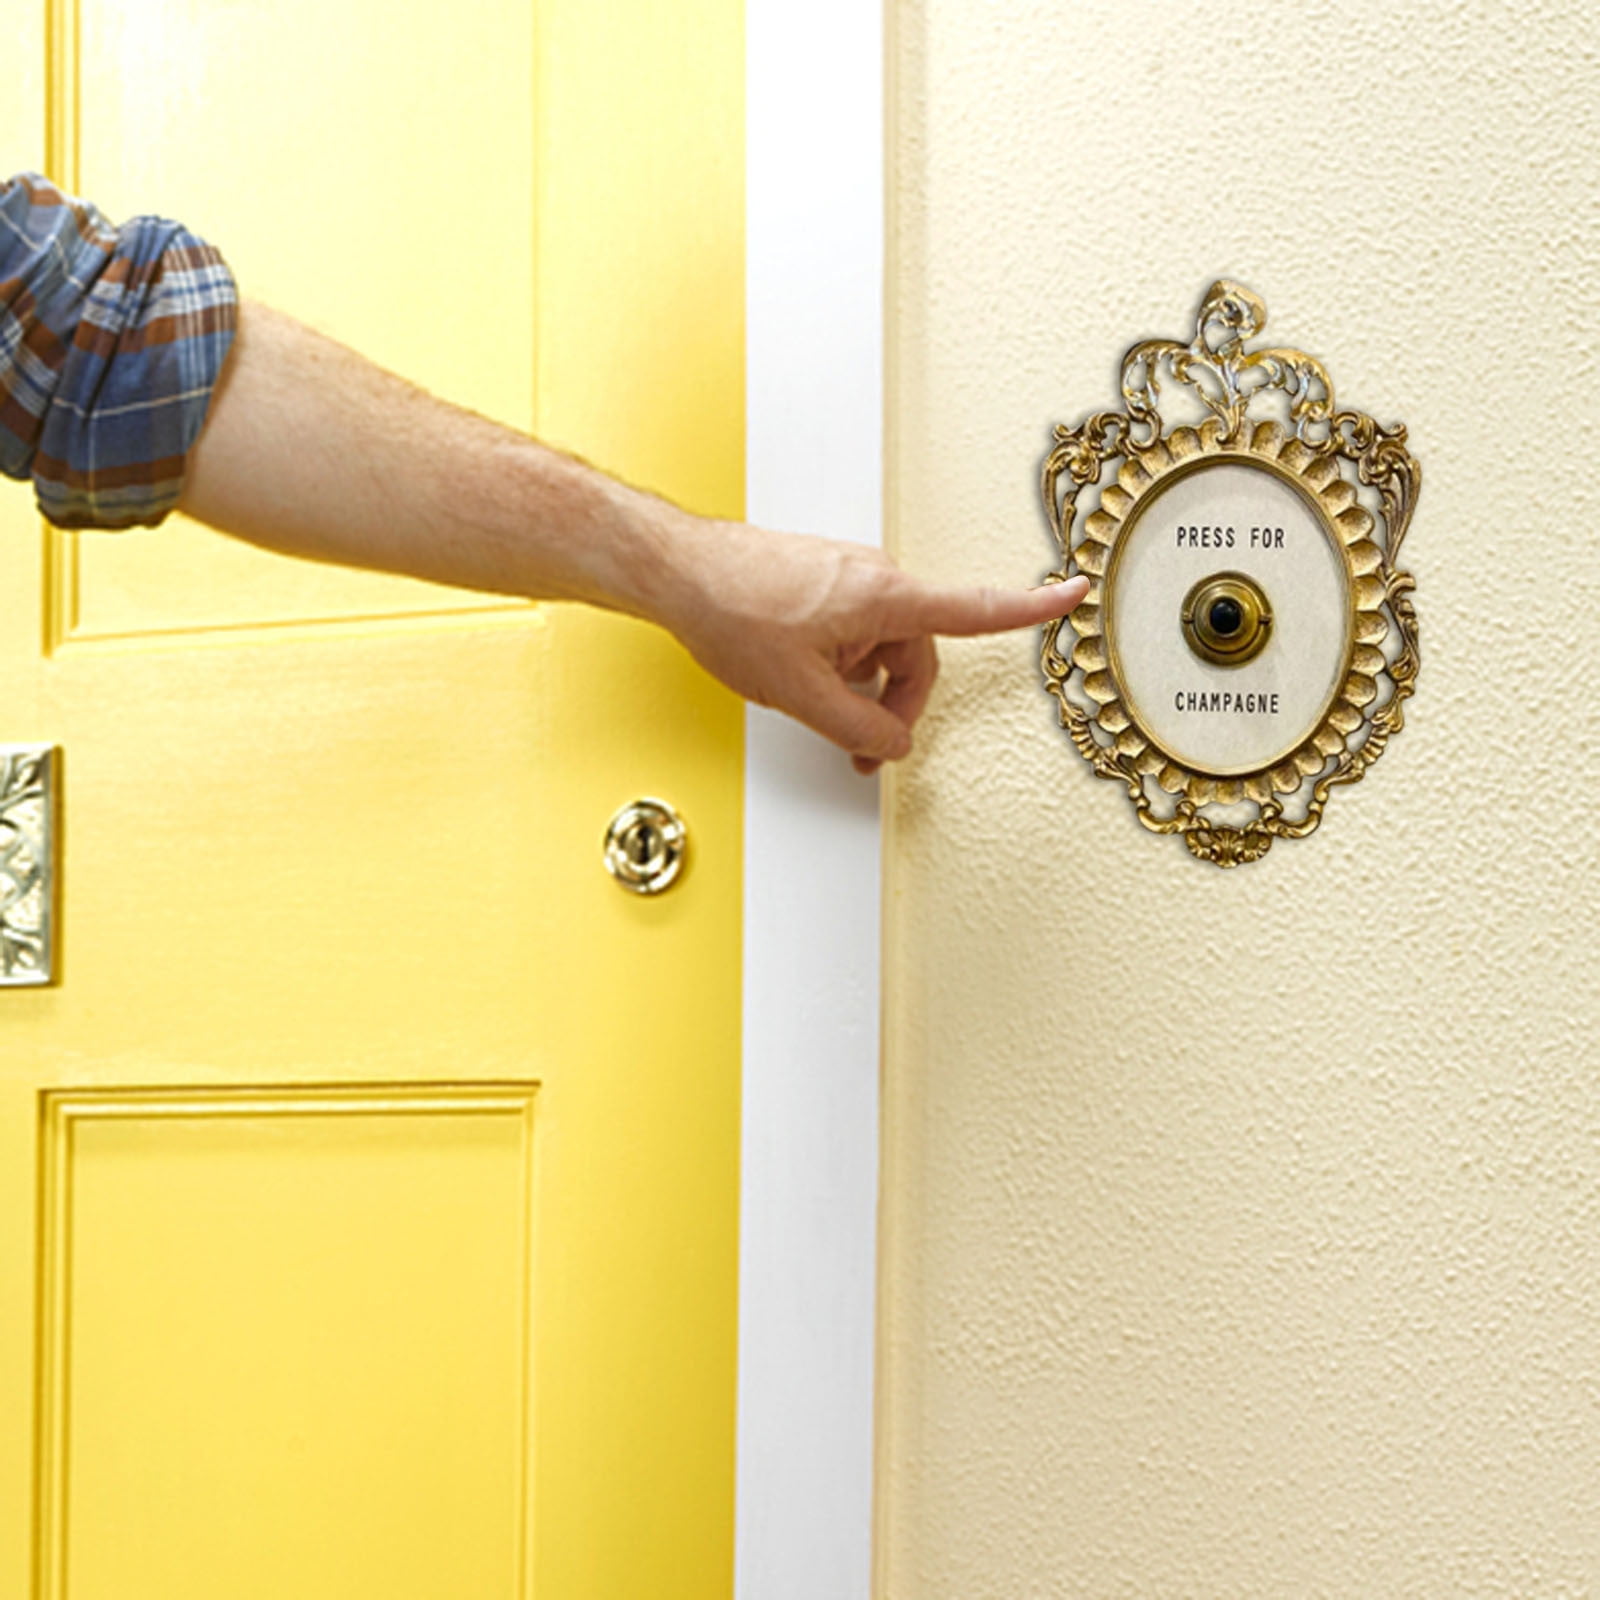 Rustic bronze animal motif doorbell buttons